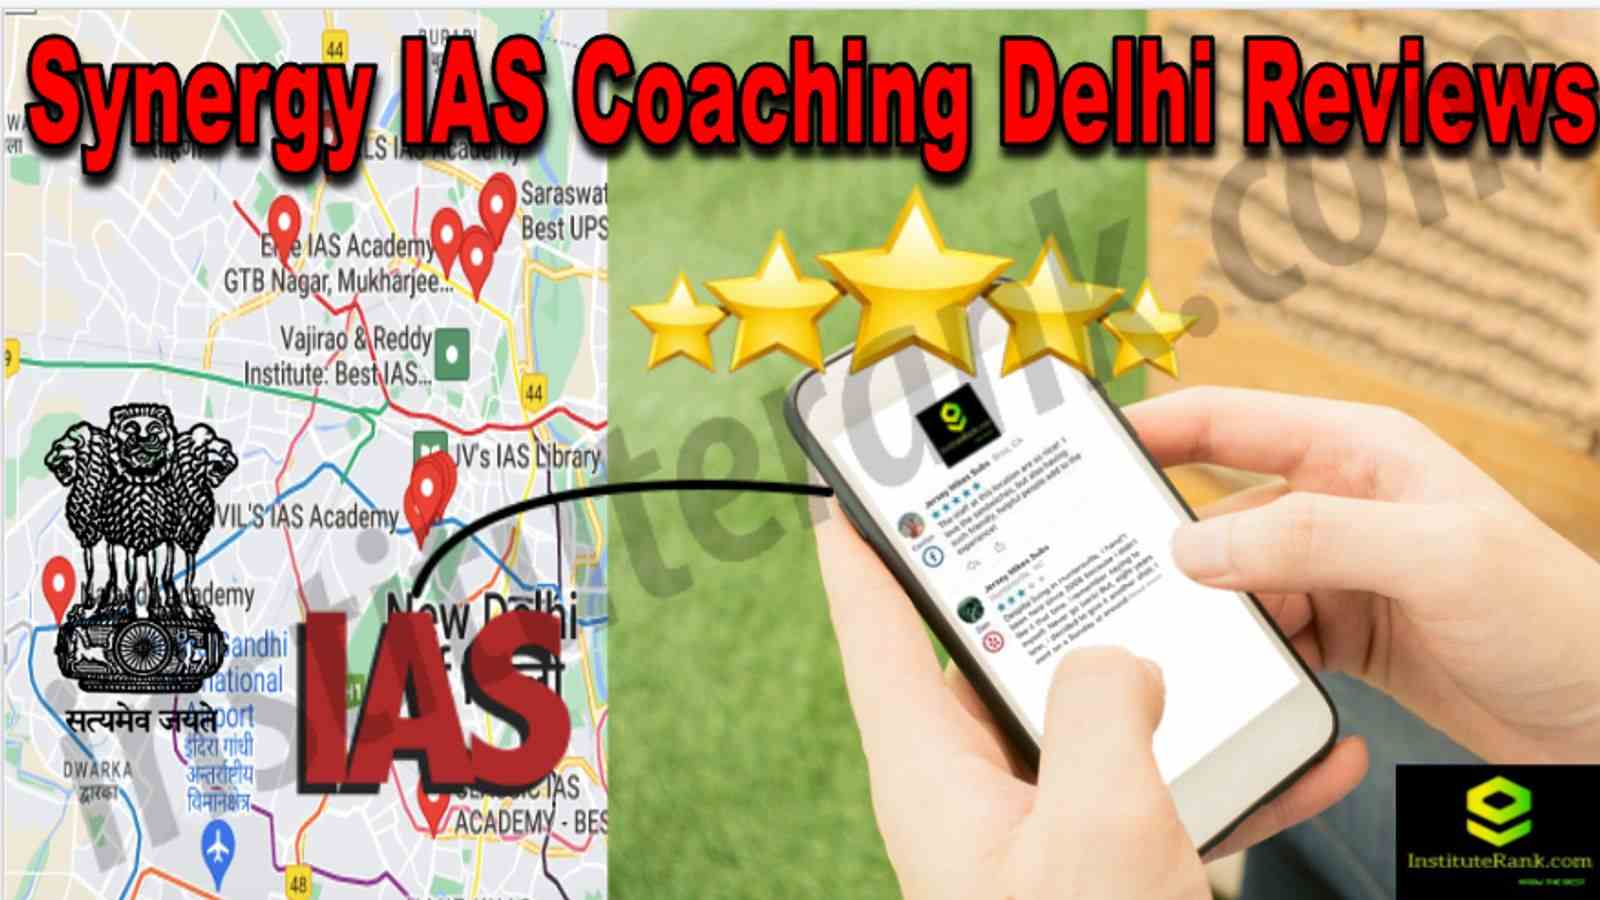 Synergy IAS Coaching Delhi Reviews